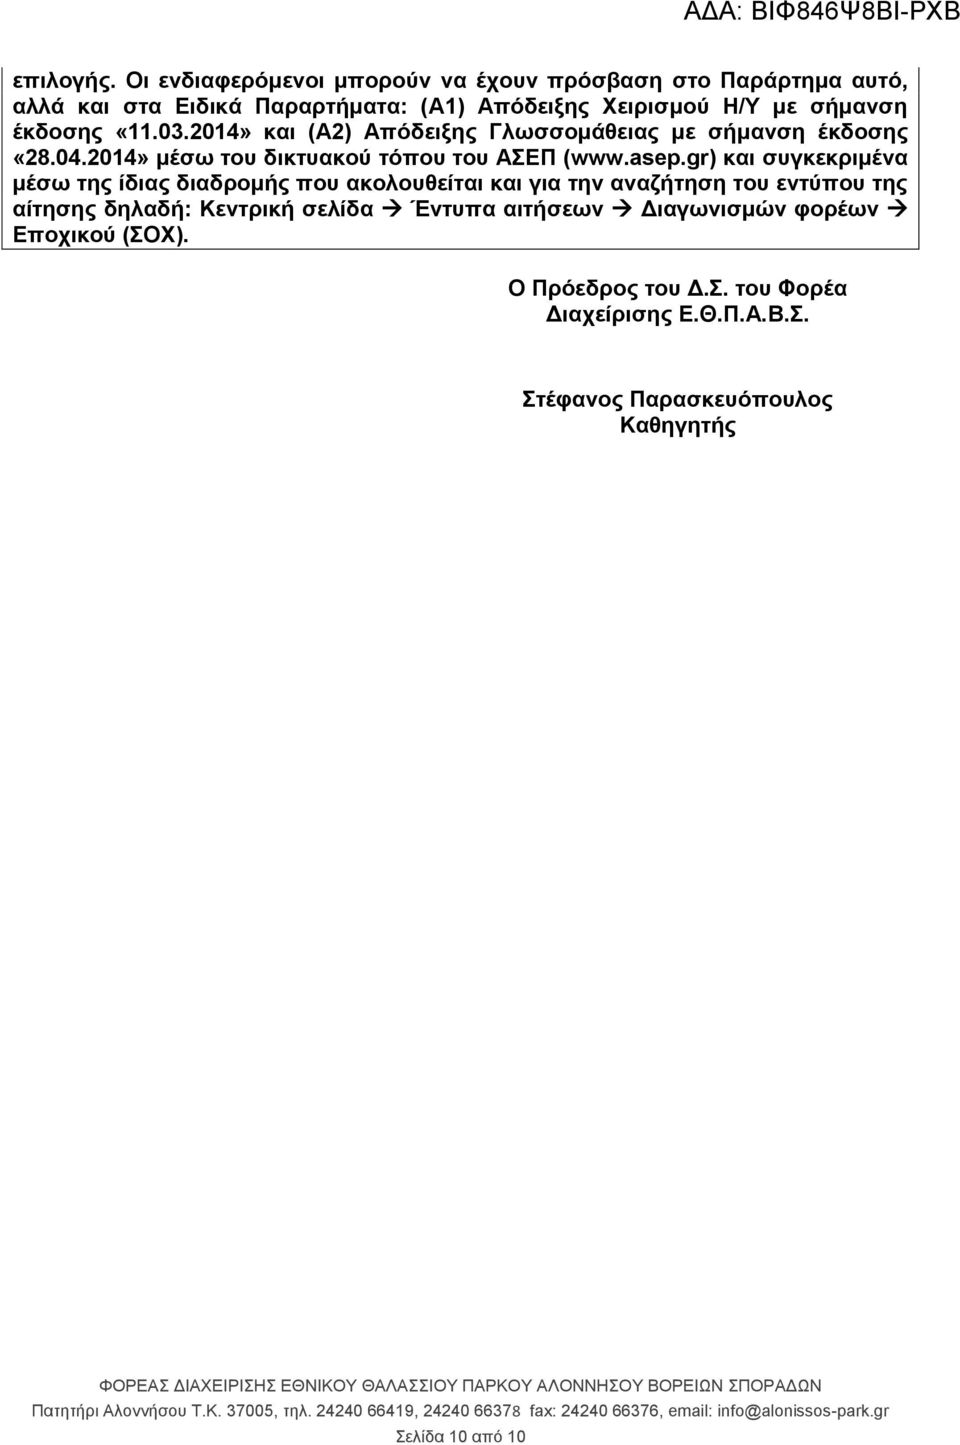 έκδοσης «11.03.2014» και (Α2) Απόδειξης Γλωσσομάθειας με σήμανση έκδοσης «28.04.2014» μέσω του δικτυακού τόπου του ΑΣΕΠ (www.asep.